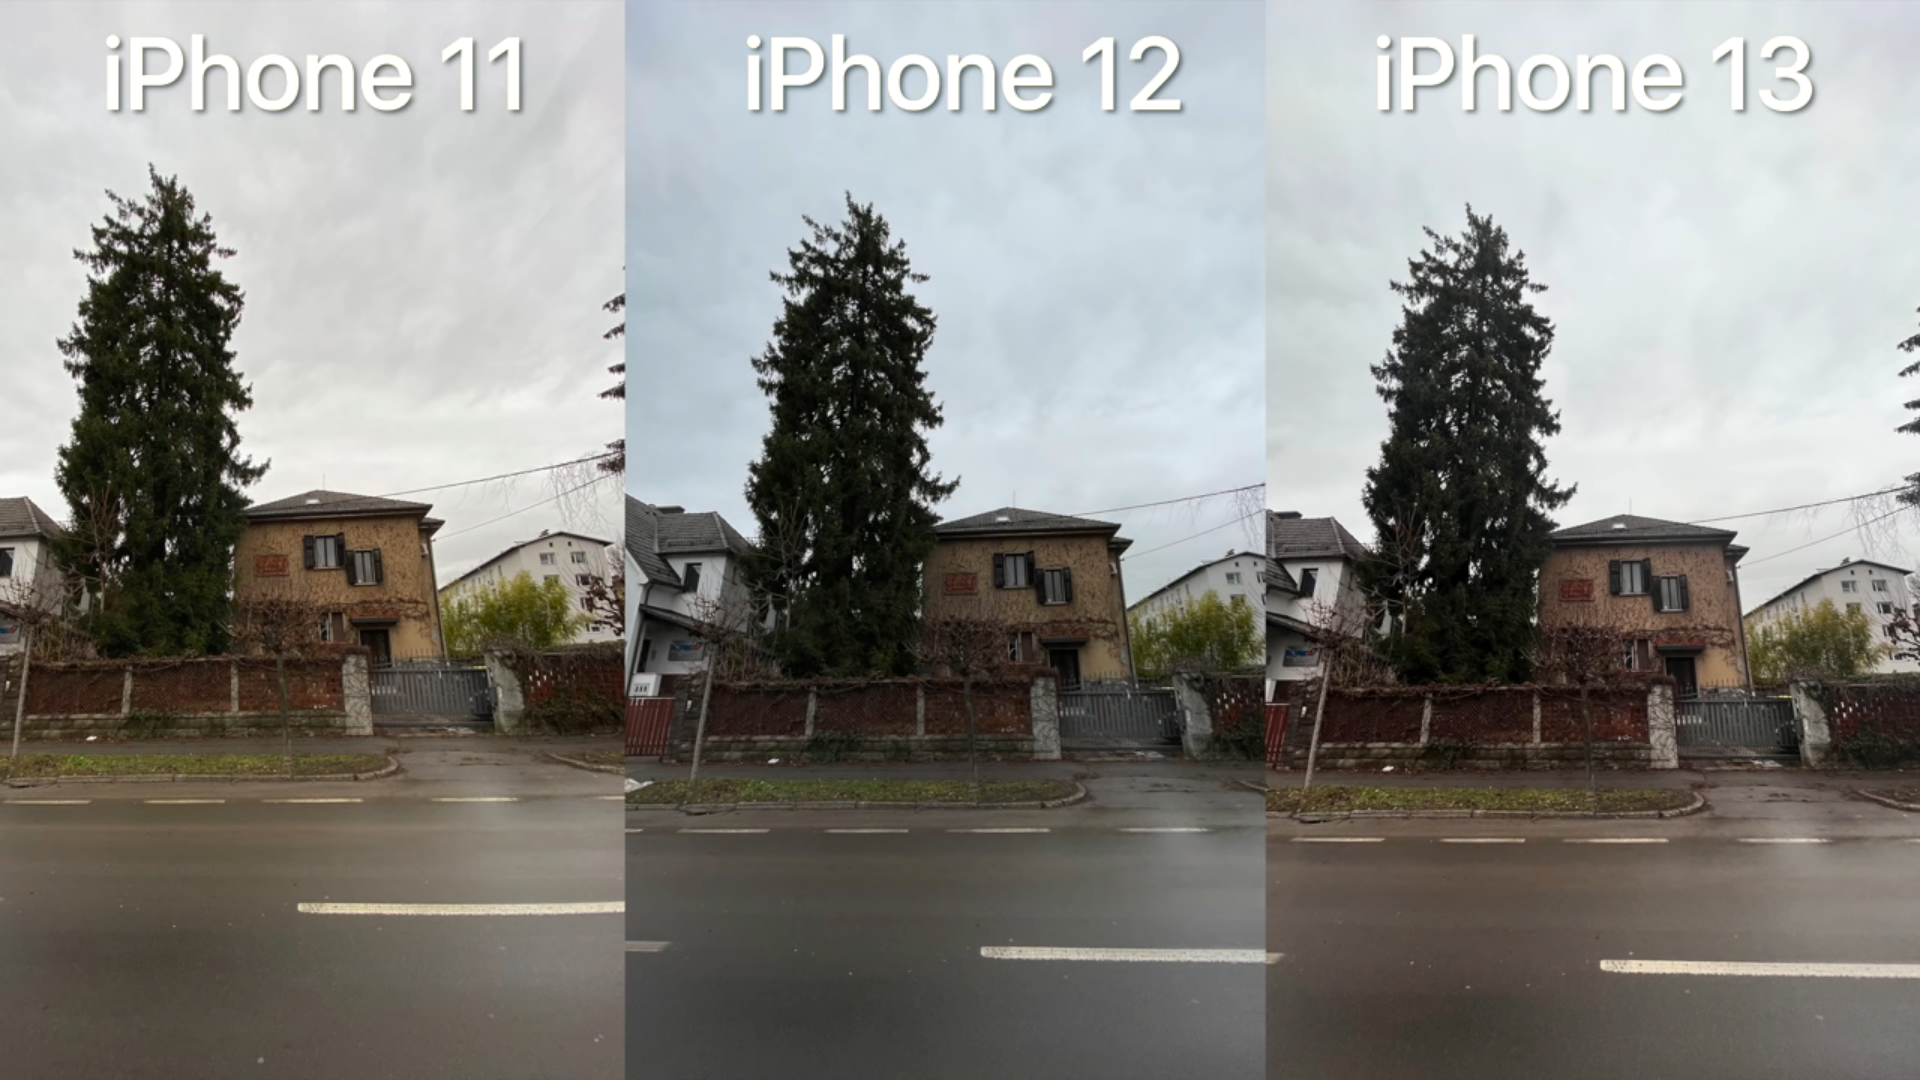 Айфон 13 про сравнение камеры. Разница между 11 и 12 айфоном. Разница между 12 и 13 айфоном. Разница фото айфон 11 и 13. Фото 11 и 13 сравнение фото.